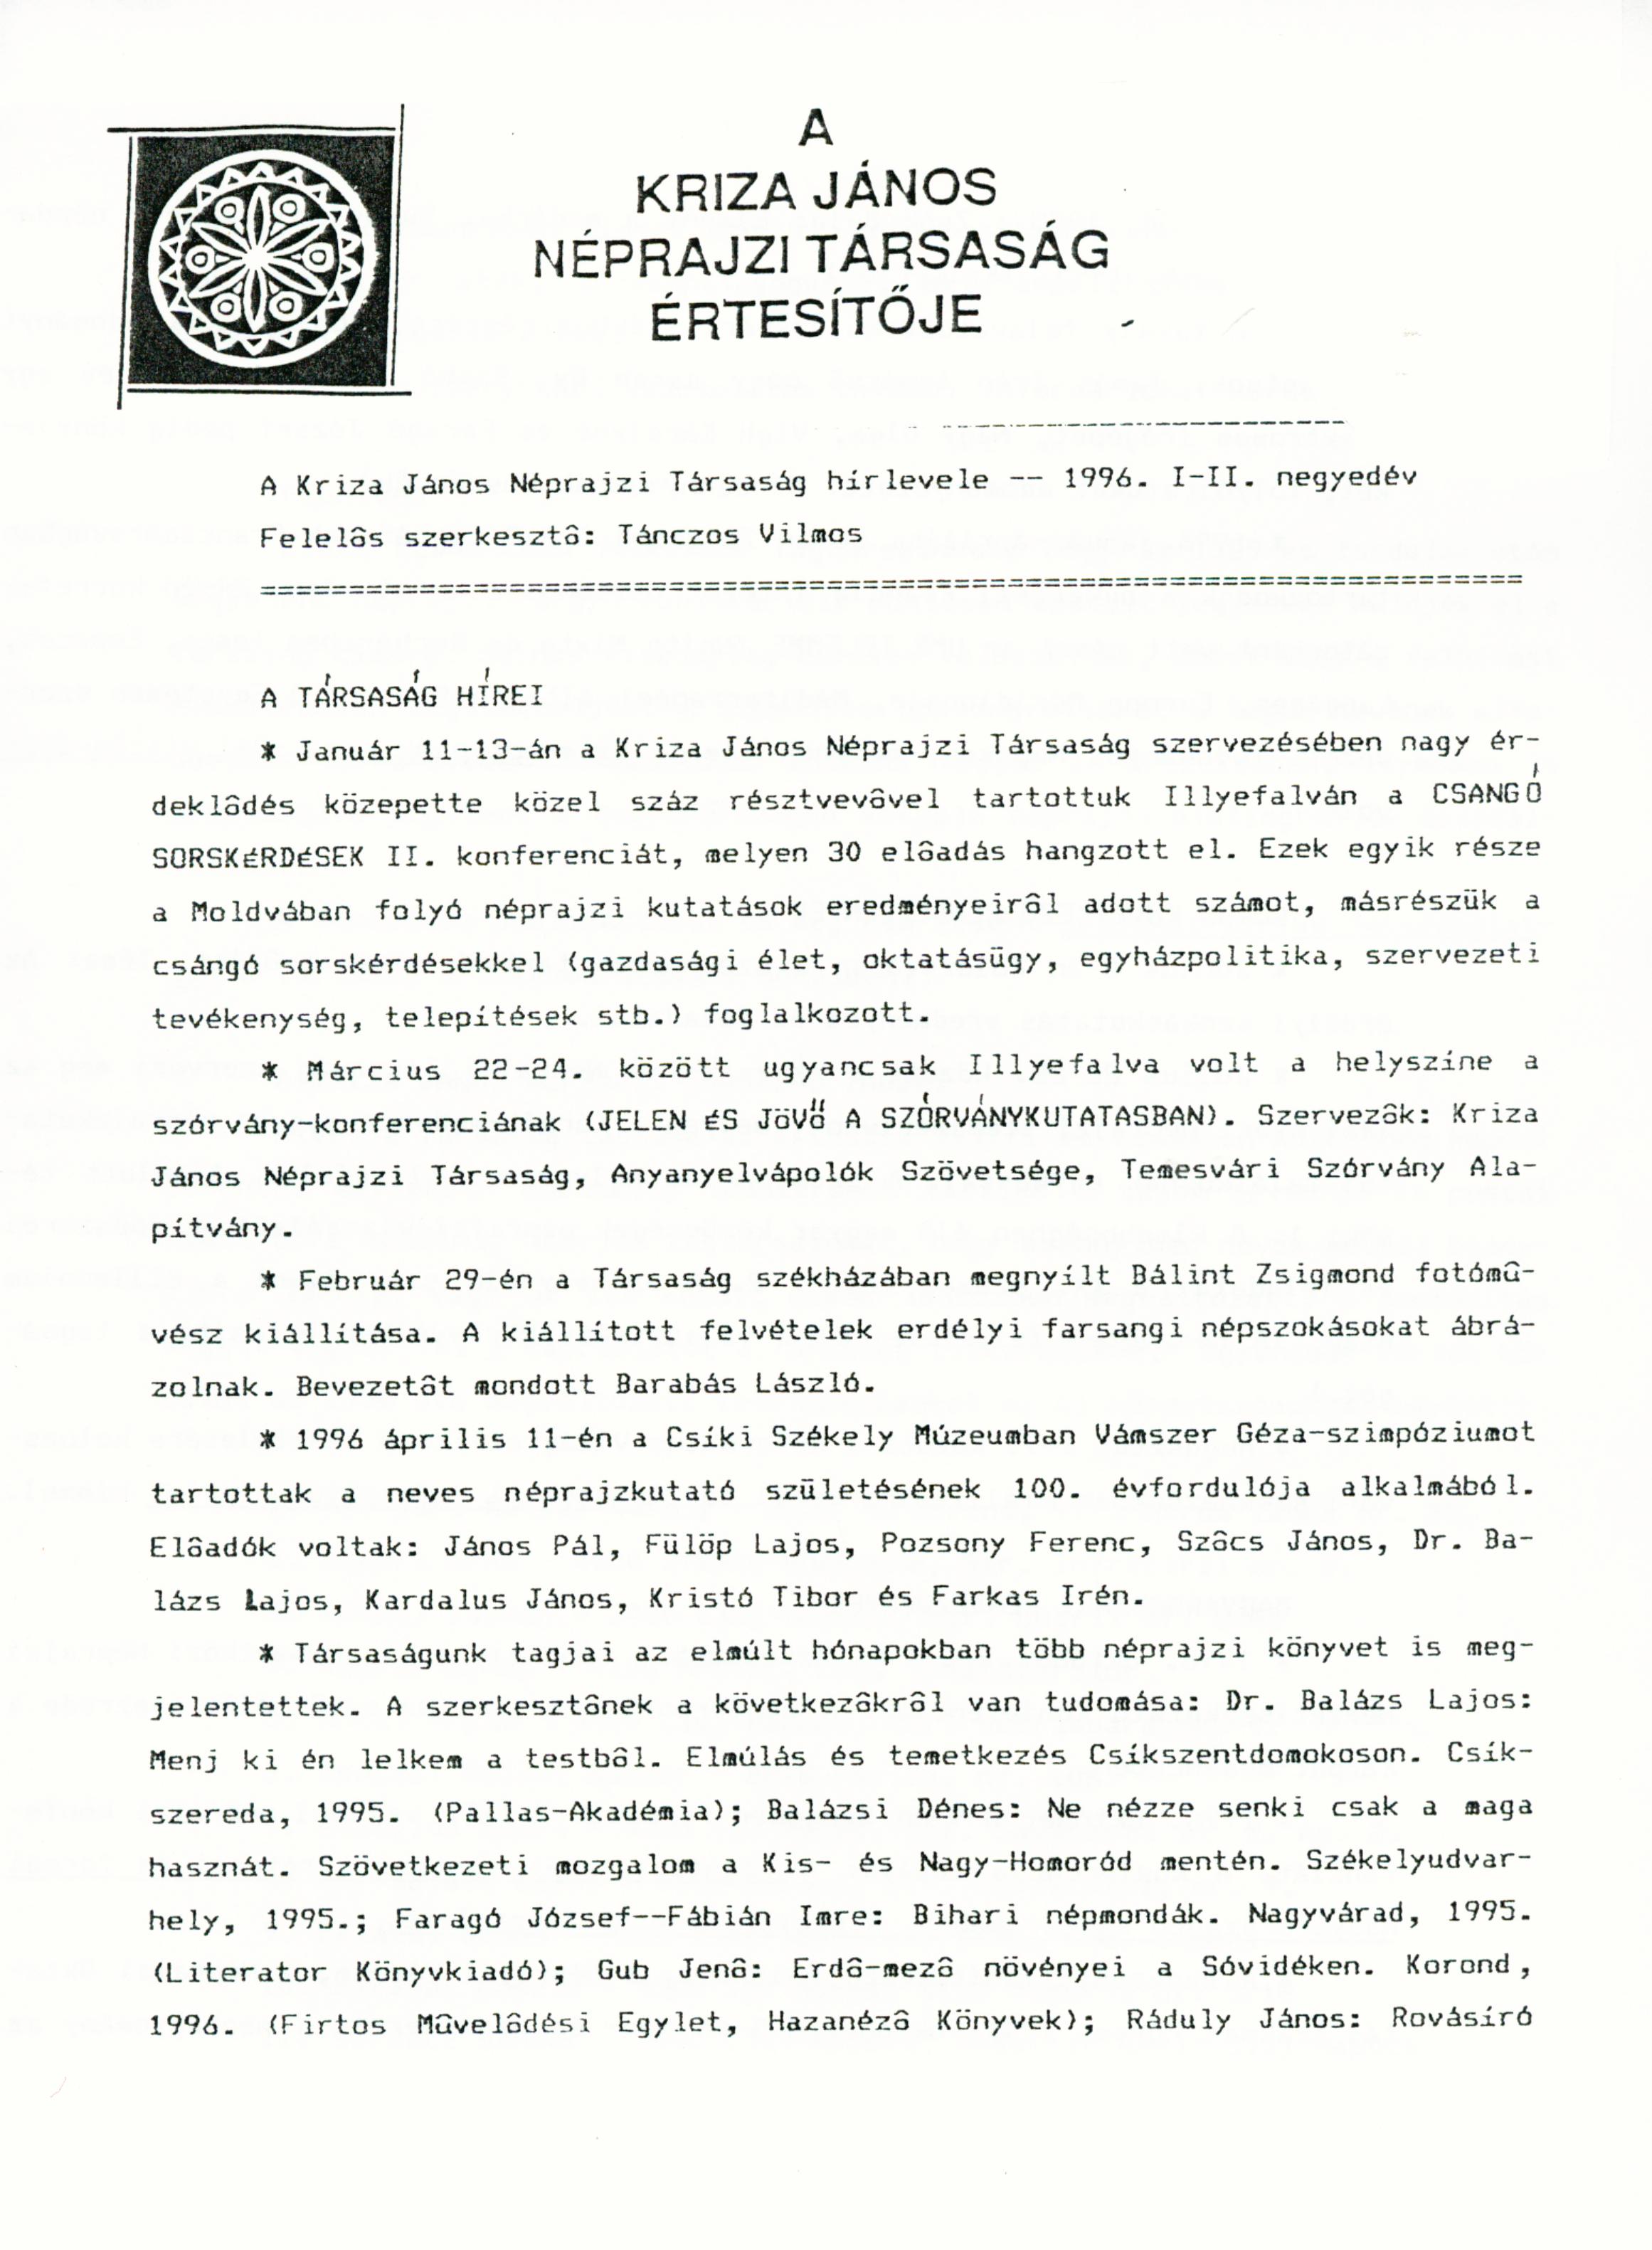 [Bulletin of the Kriza János Etnographic Society. Vol. VI. Nr. 1–2.] A Kriza János Néprajzi Társaság Értesítője. VI. évf. 1–2. sz.